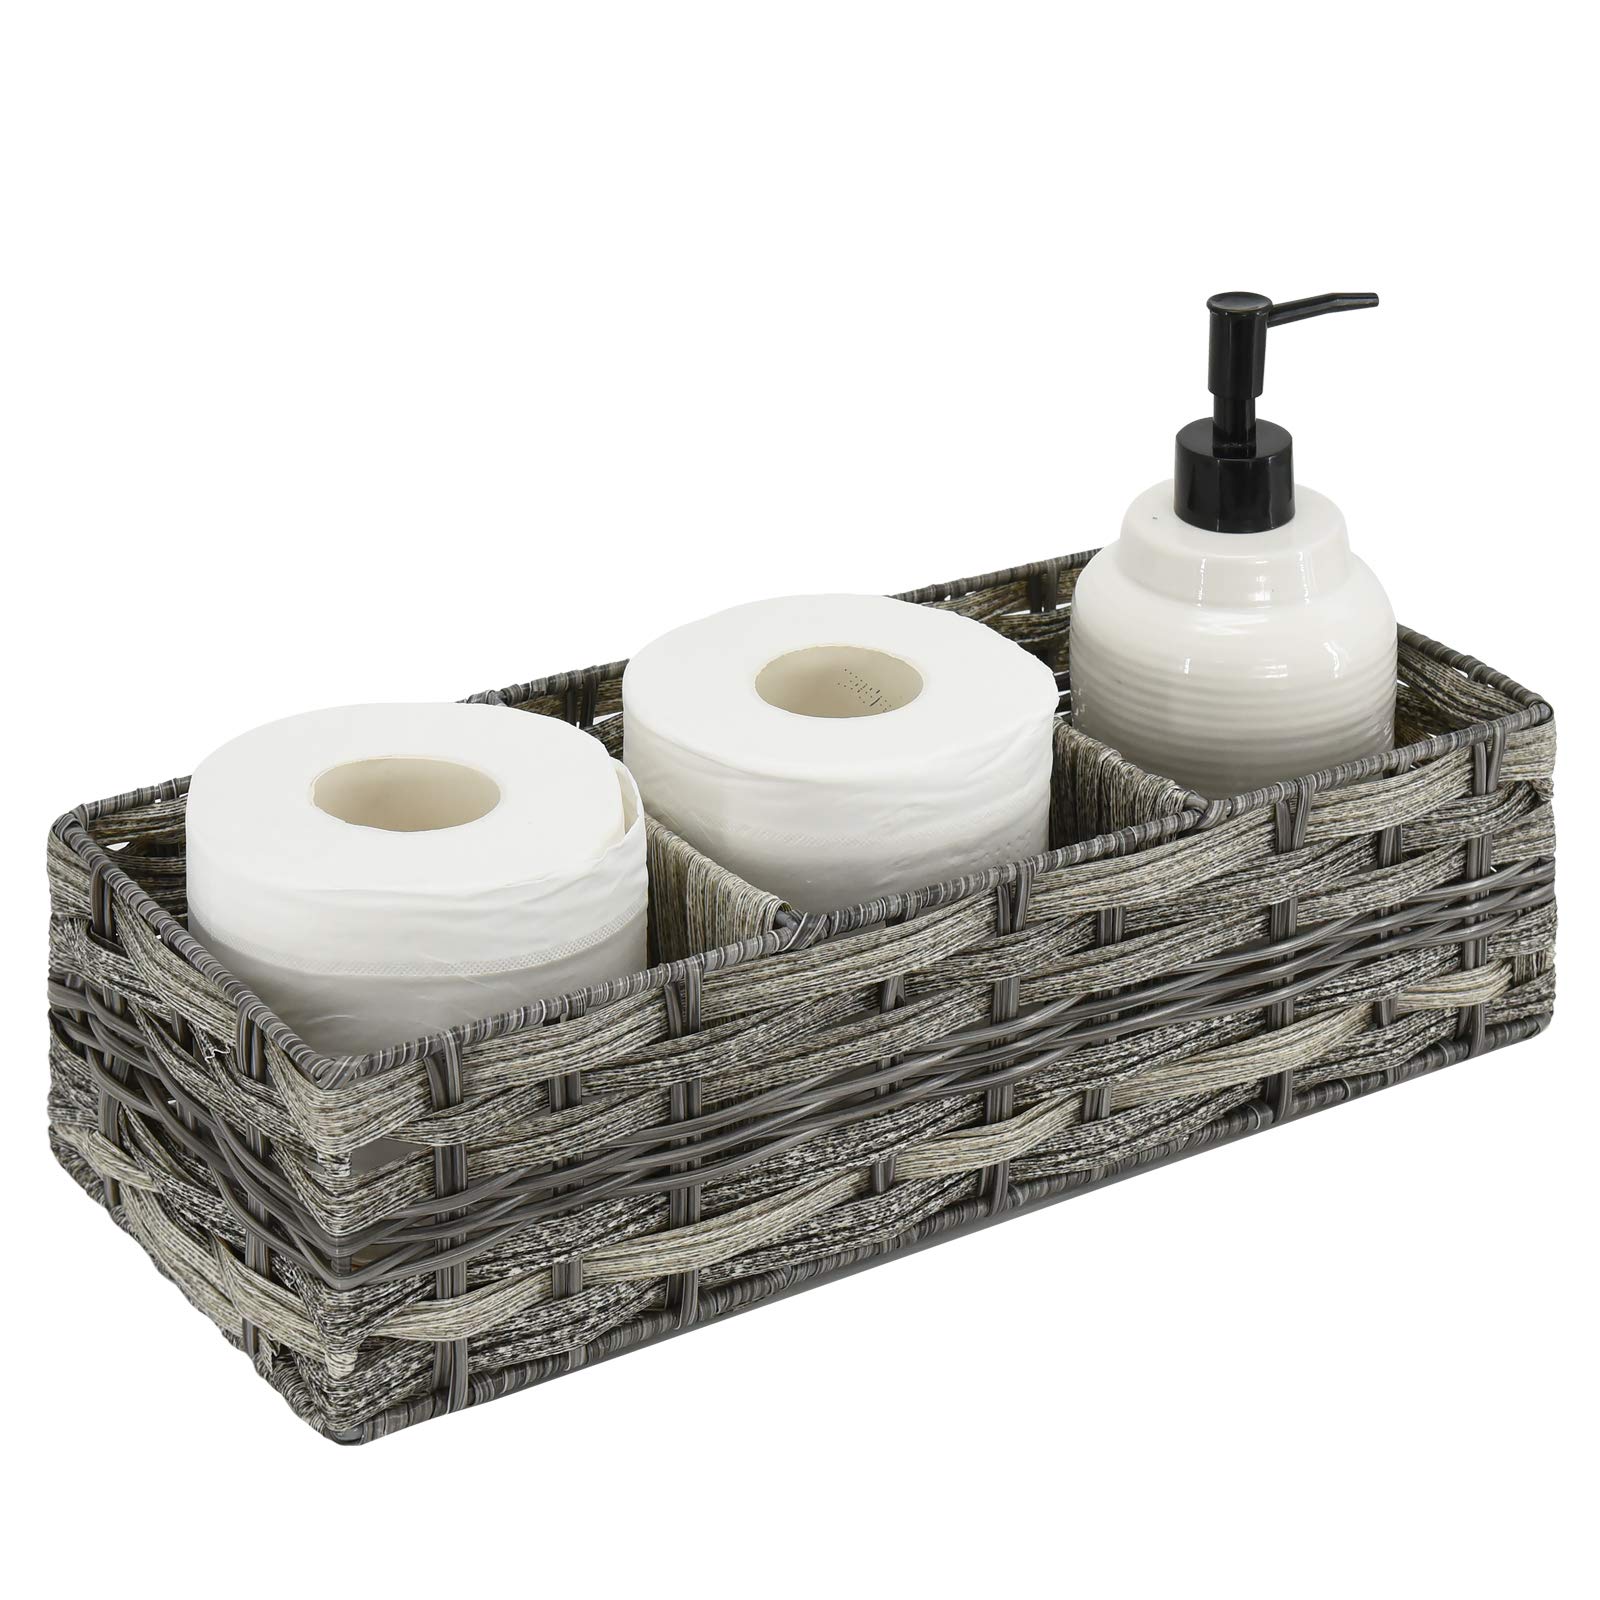 Farmhouse Toilet Paper Holder Bathroom Decor, Toilet Paper Storage